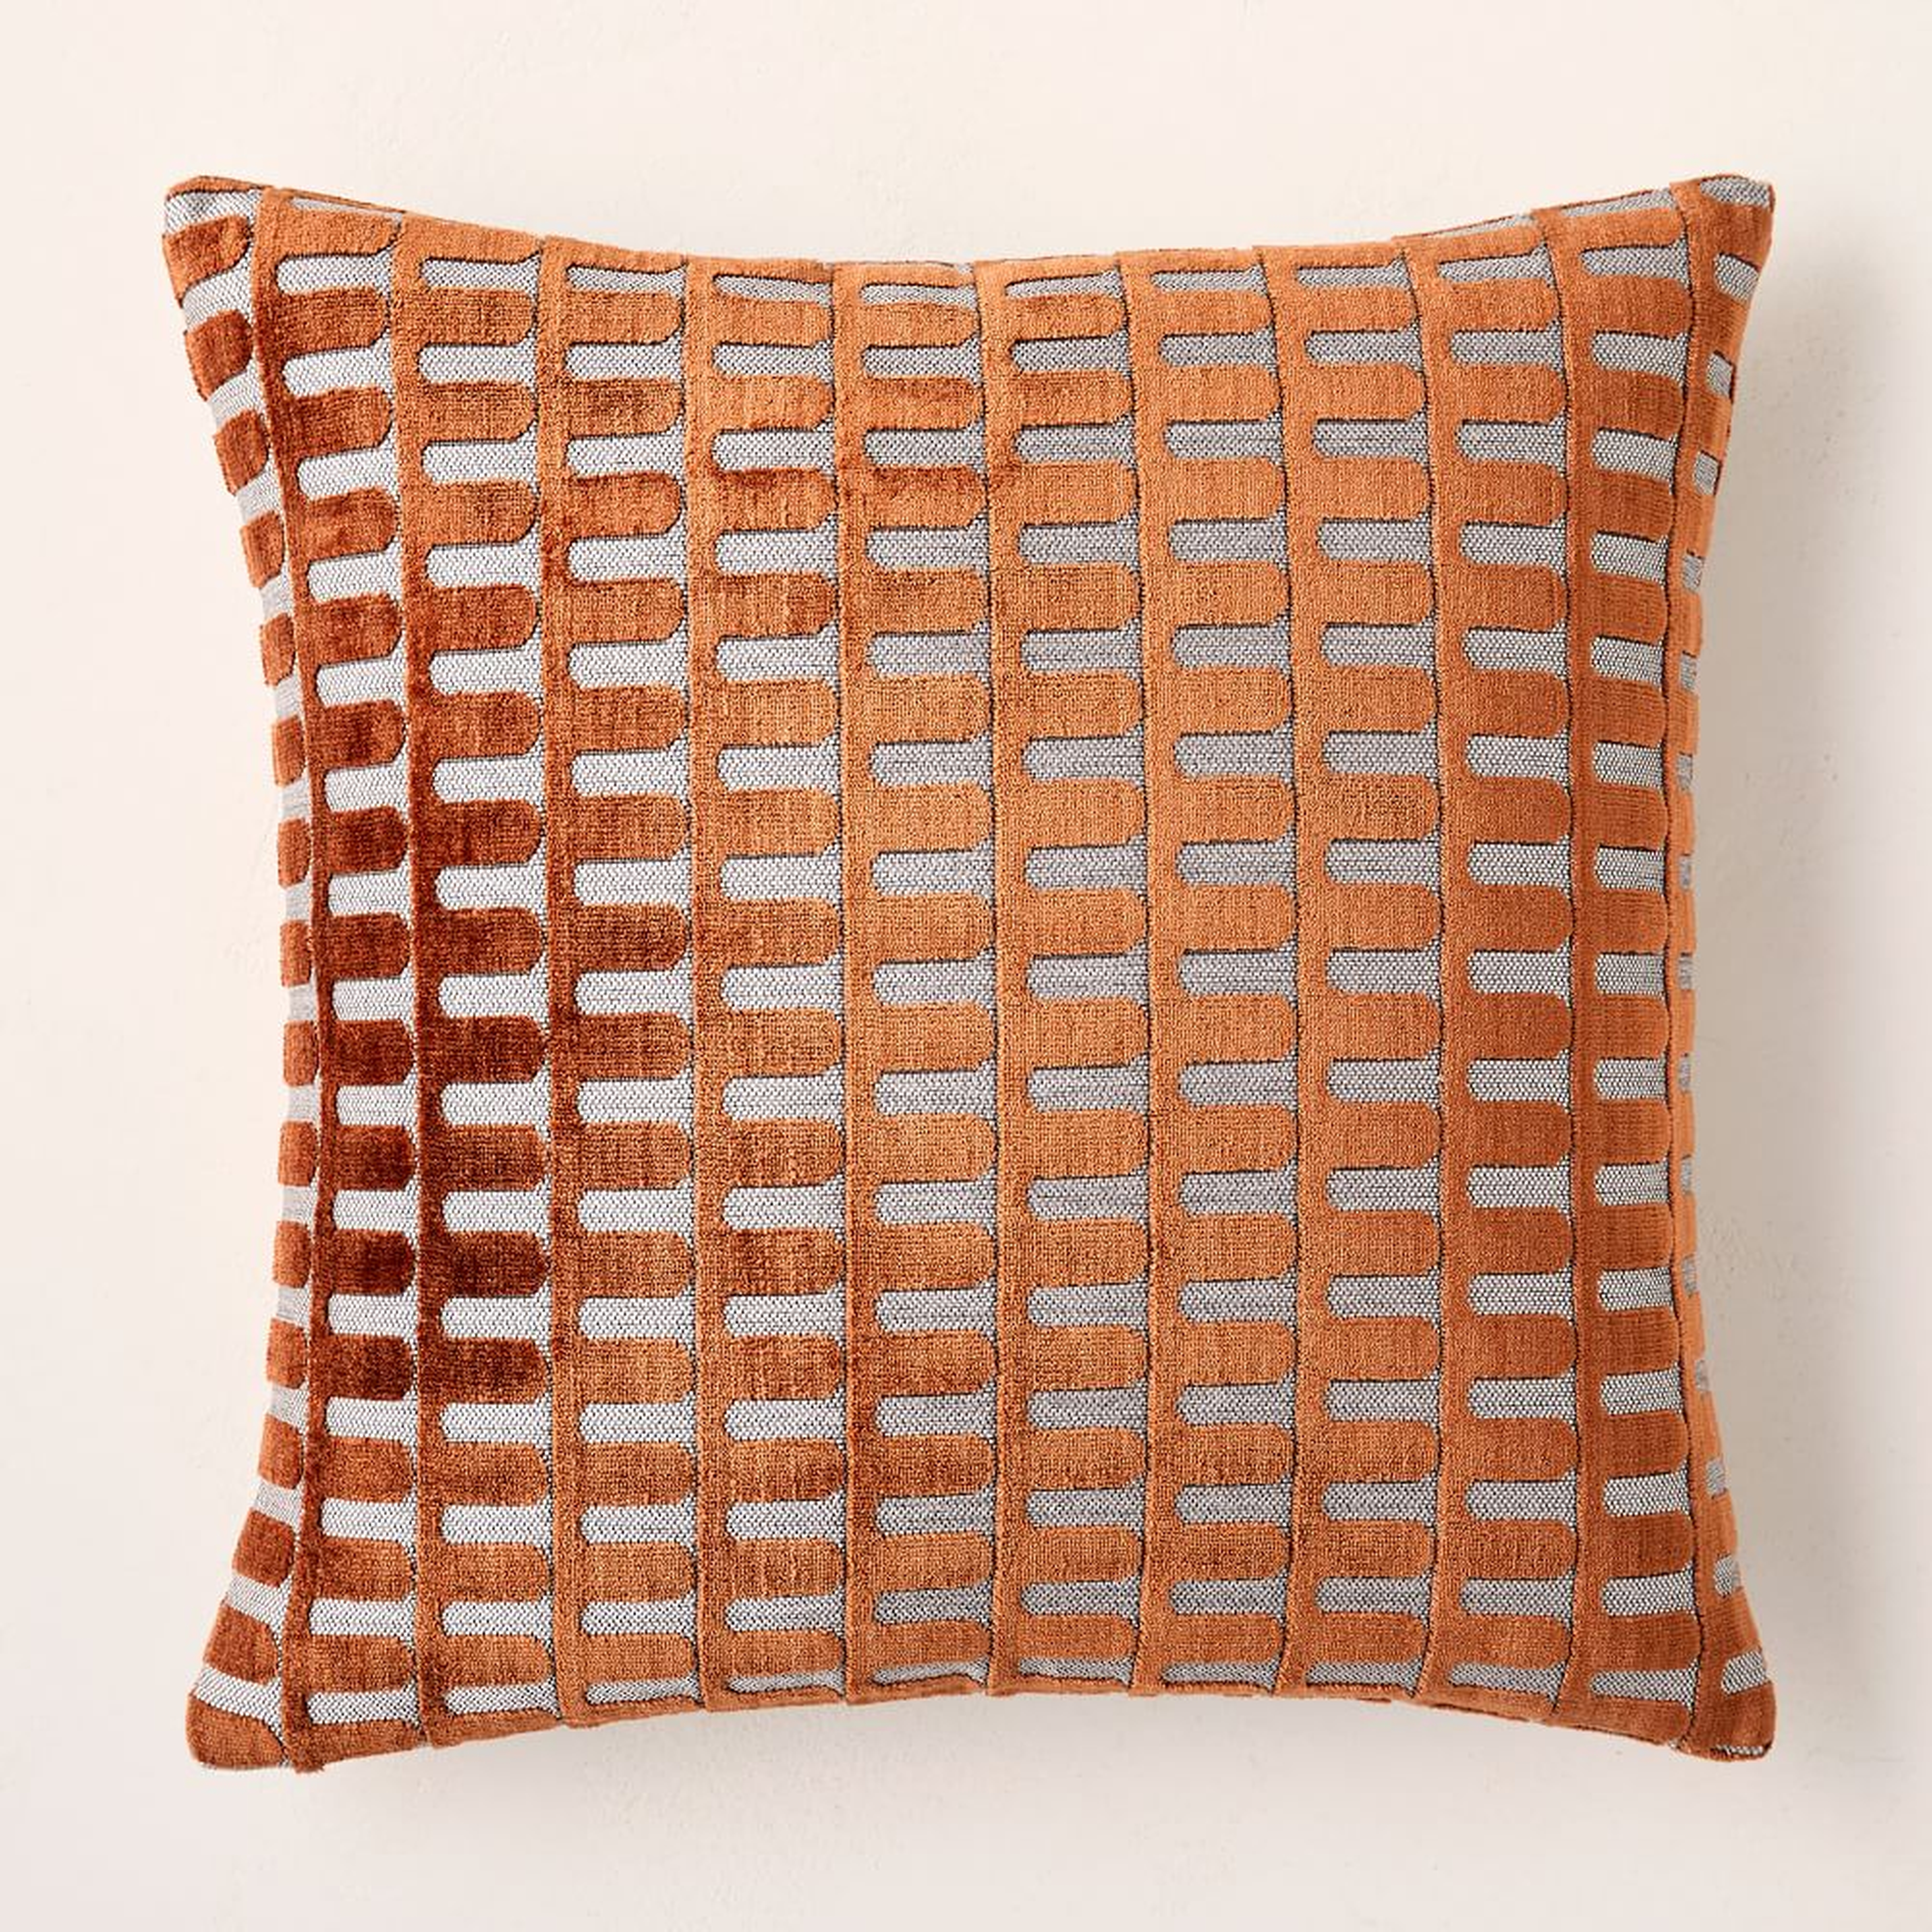 Cut Velvet Archways Pillow Cover, Set of 2, 18"x18", Copper - West Elm